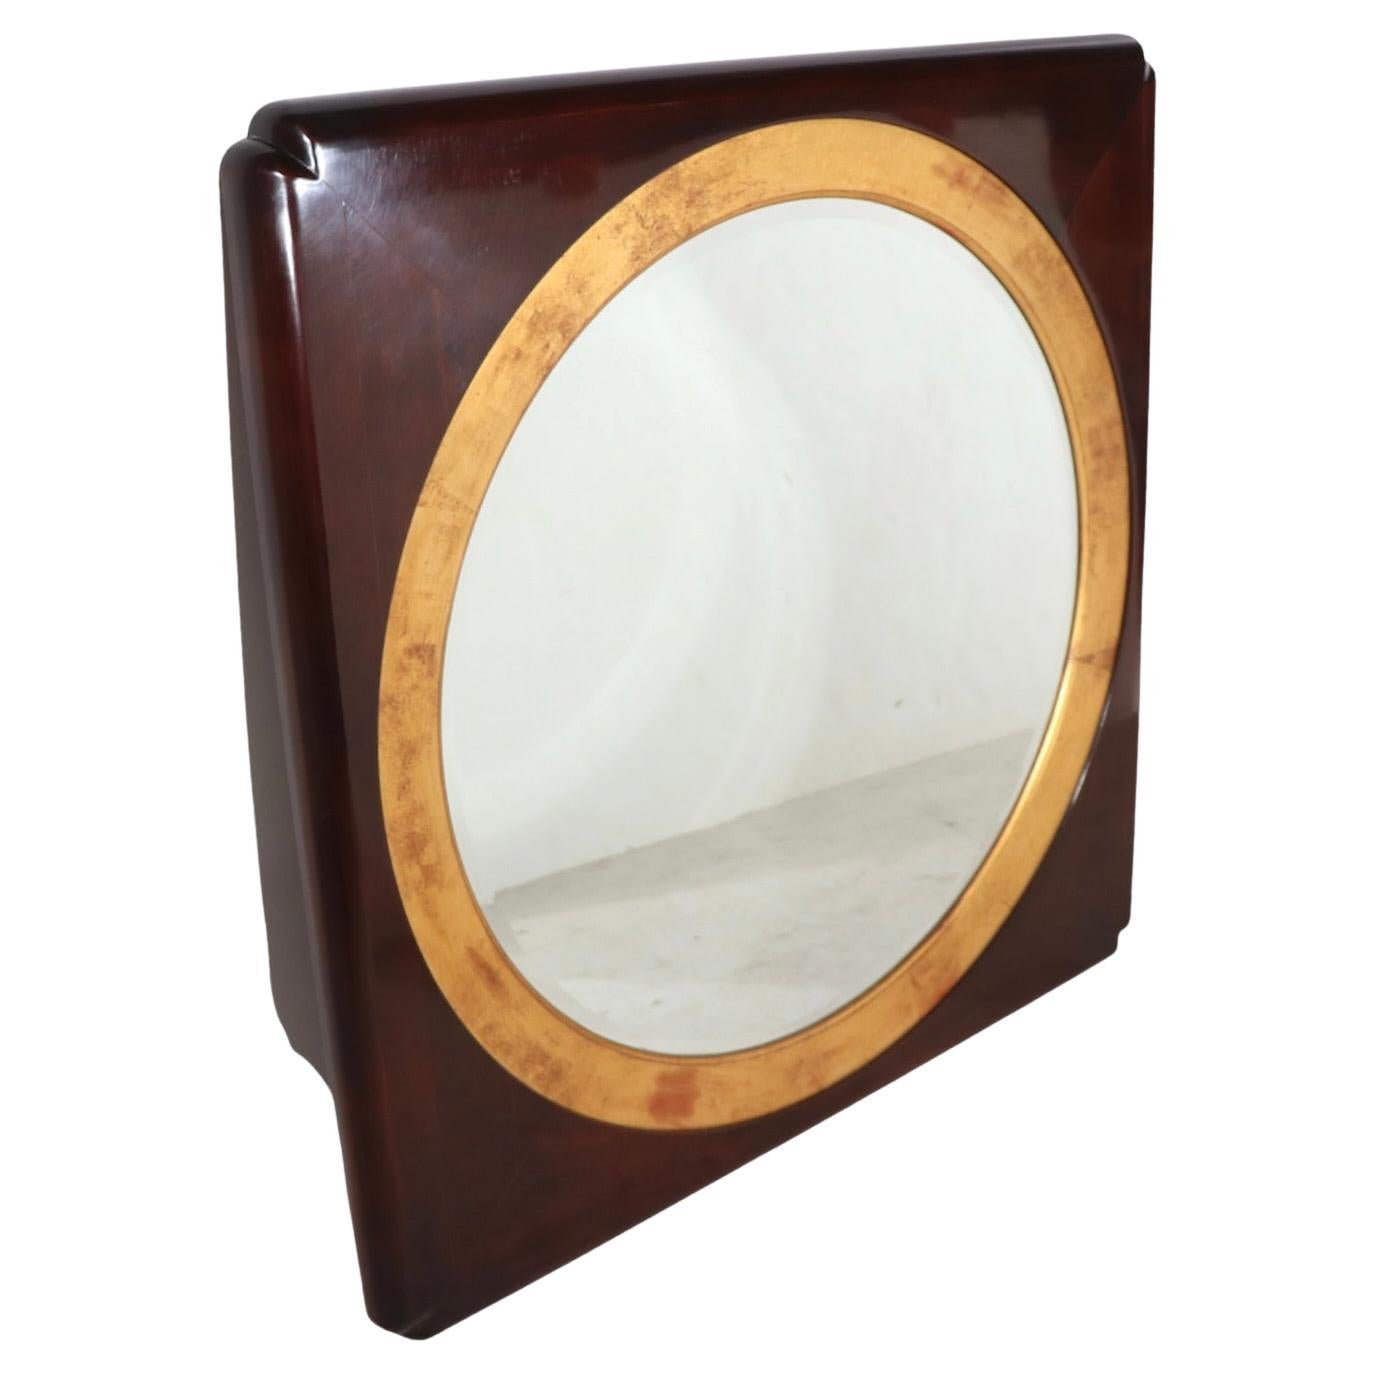 Spectaculaire miroir hublot réalisé par Henredon, fabricant de meubles de qualité supérieure, vers les années 1970/1980. Le miroir présente un centre circulaire, (32 pouces de diamètre), entouré de garnitures dorées, dans un cadre en bois foncé